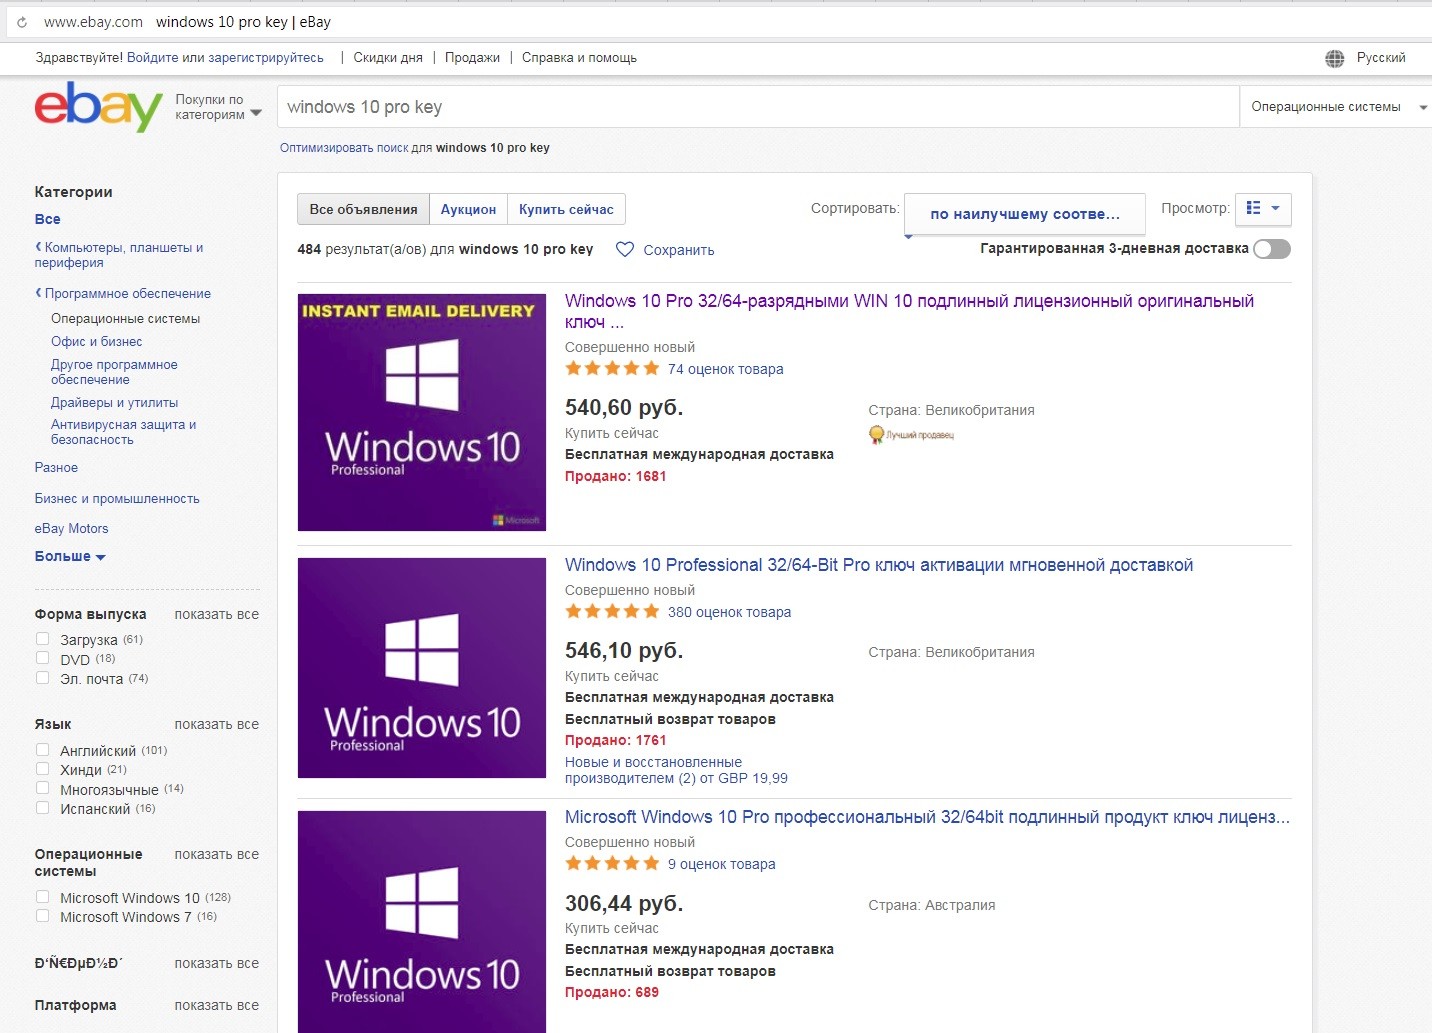 Покупка лицензии Windows 10 на торговой площадке eBay